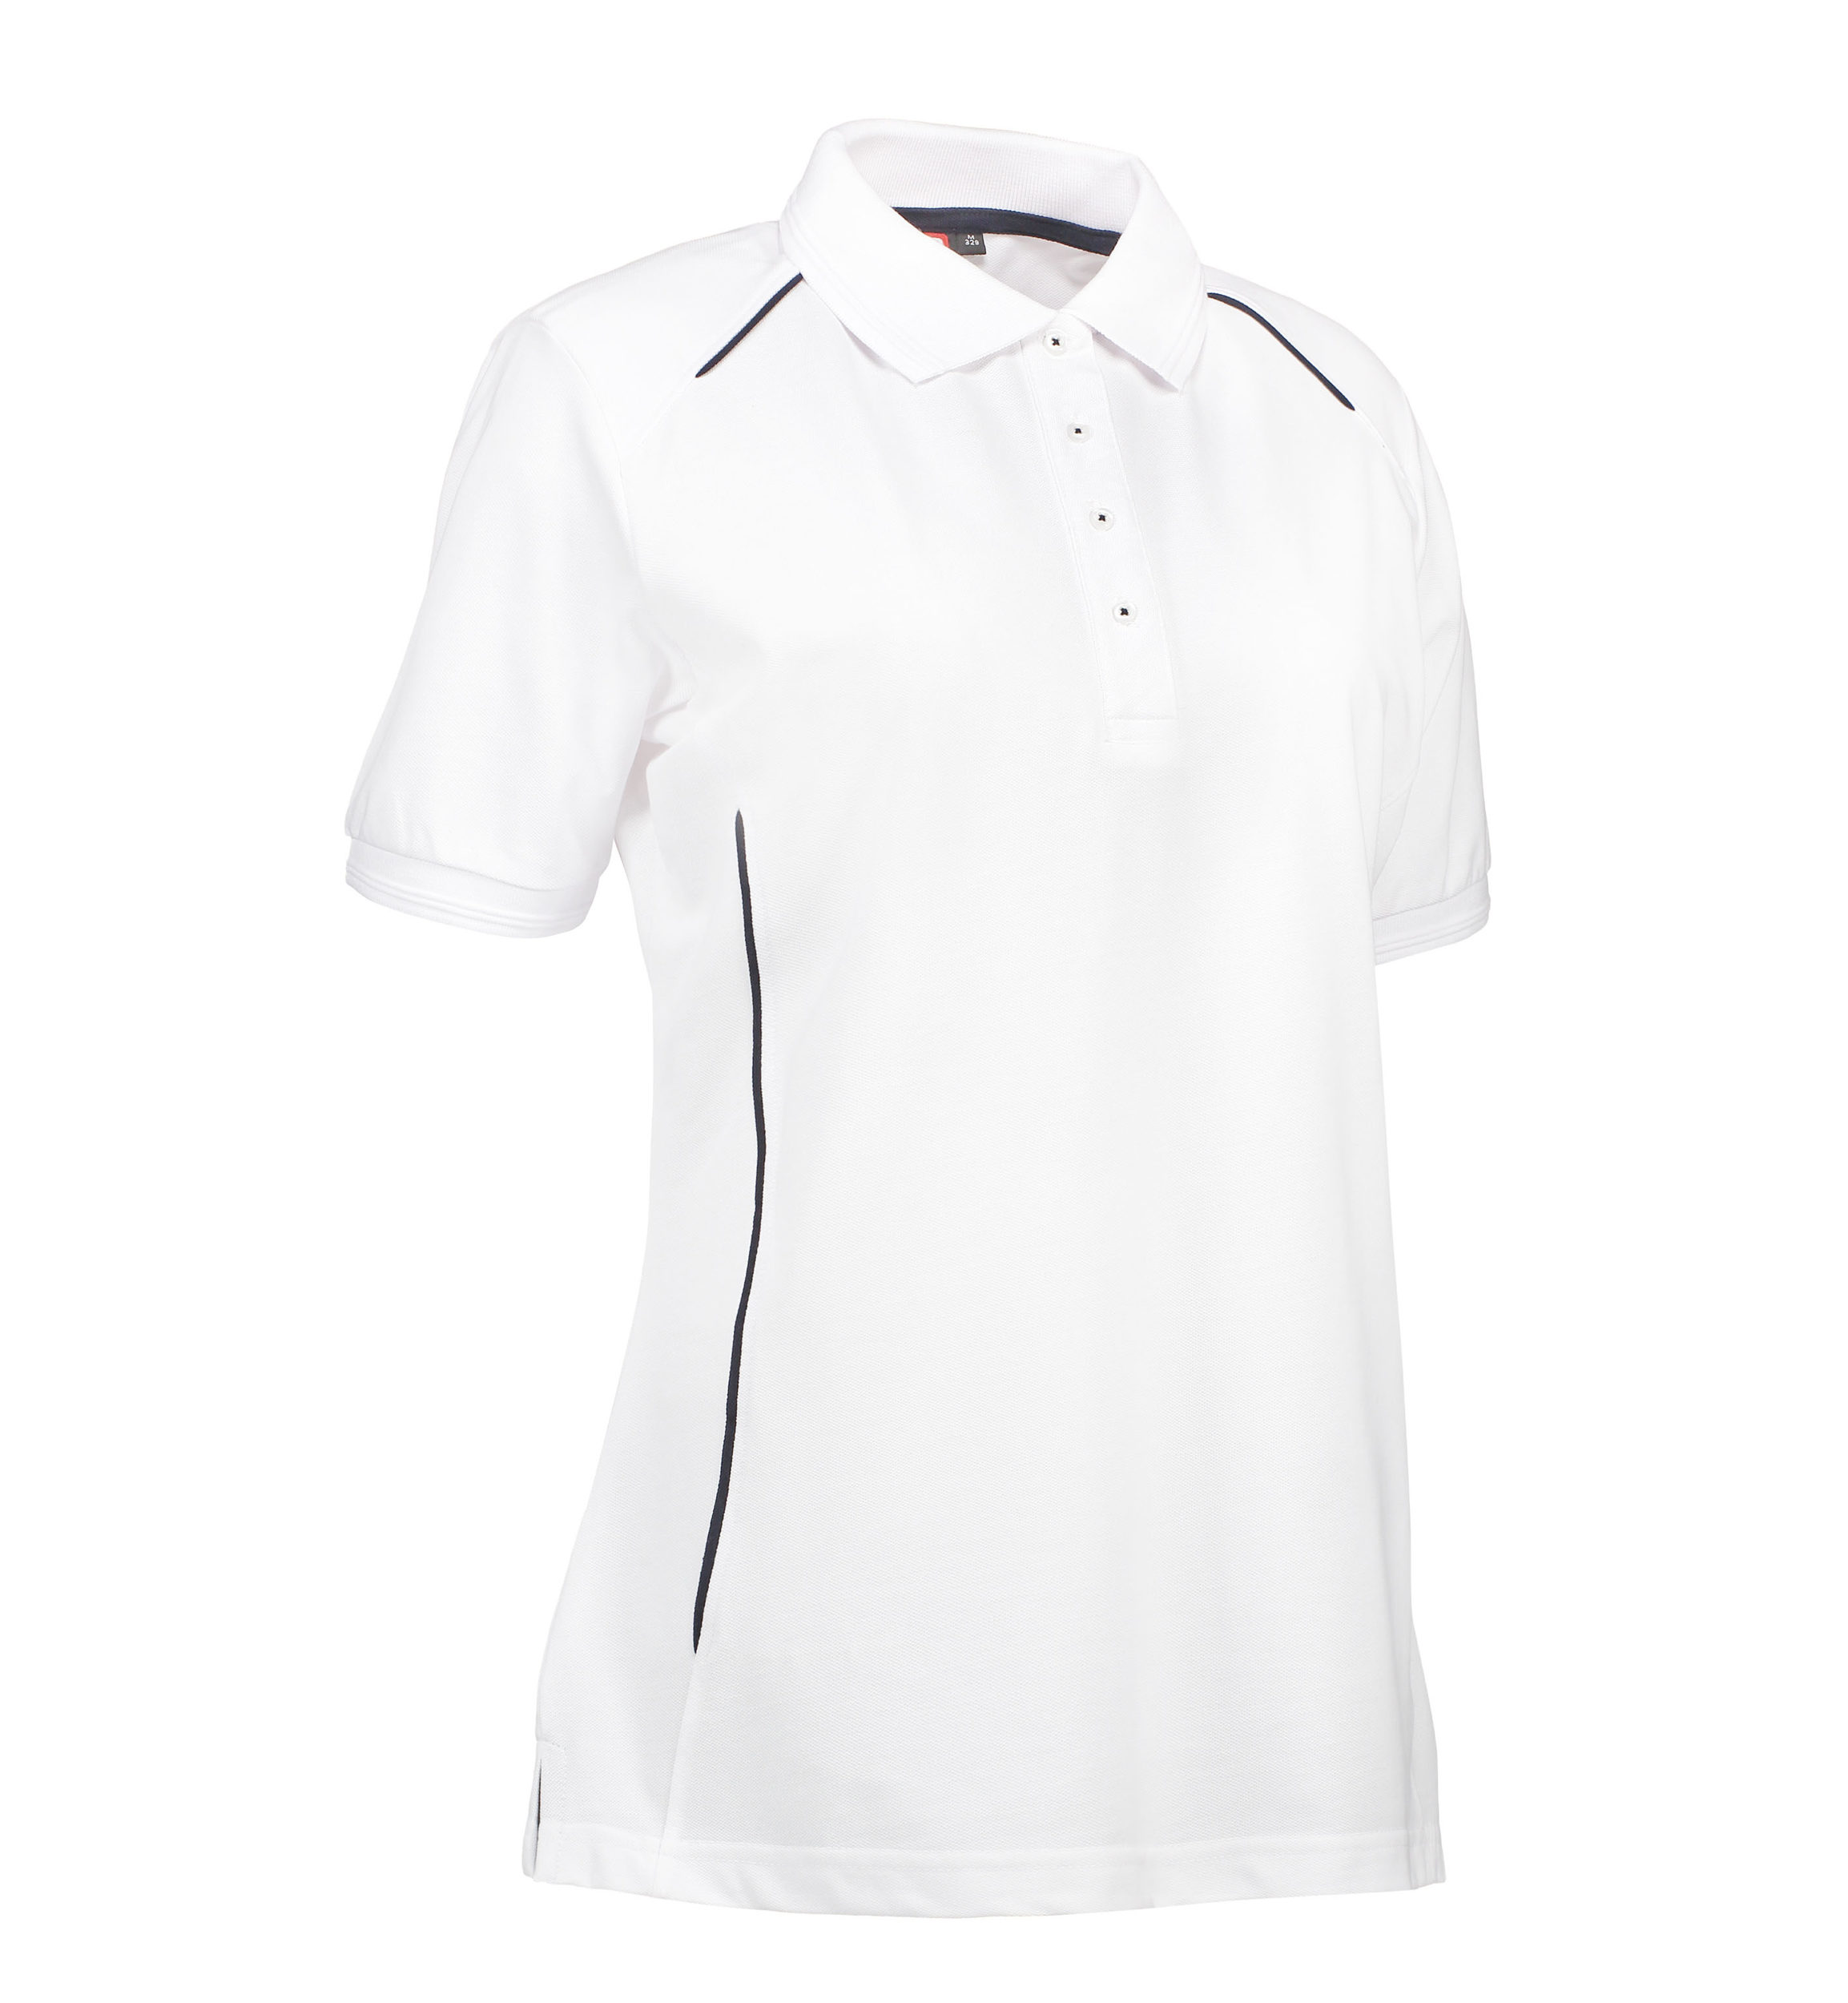 Se Slidstærk polo t-shirt i hvid til damer - 5XL hos Sygeplejebutikken.dk